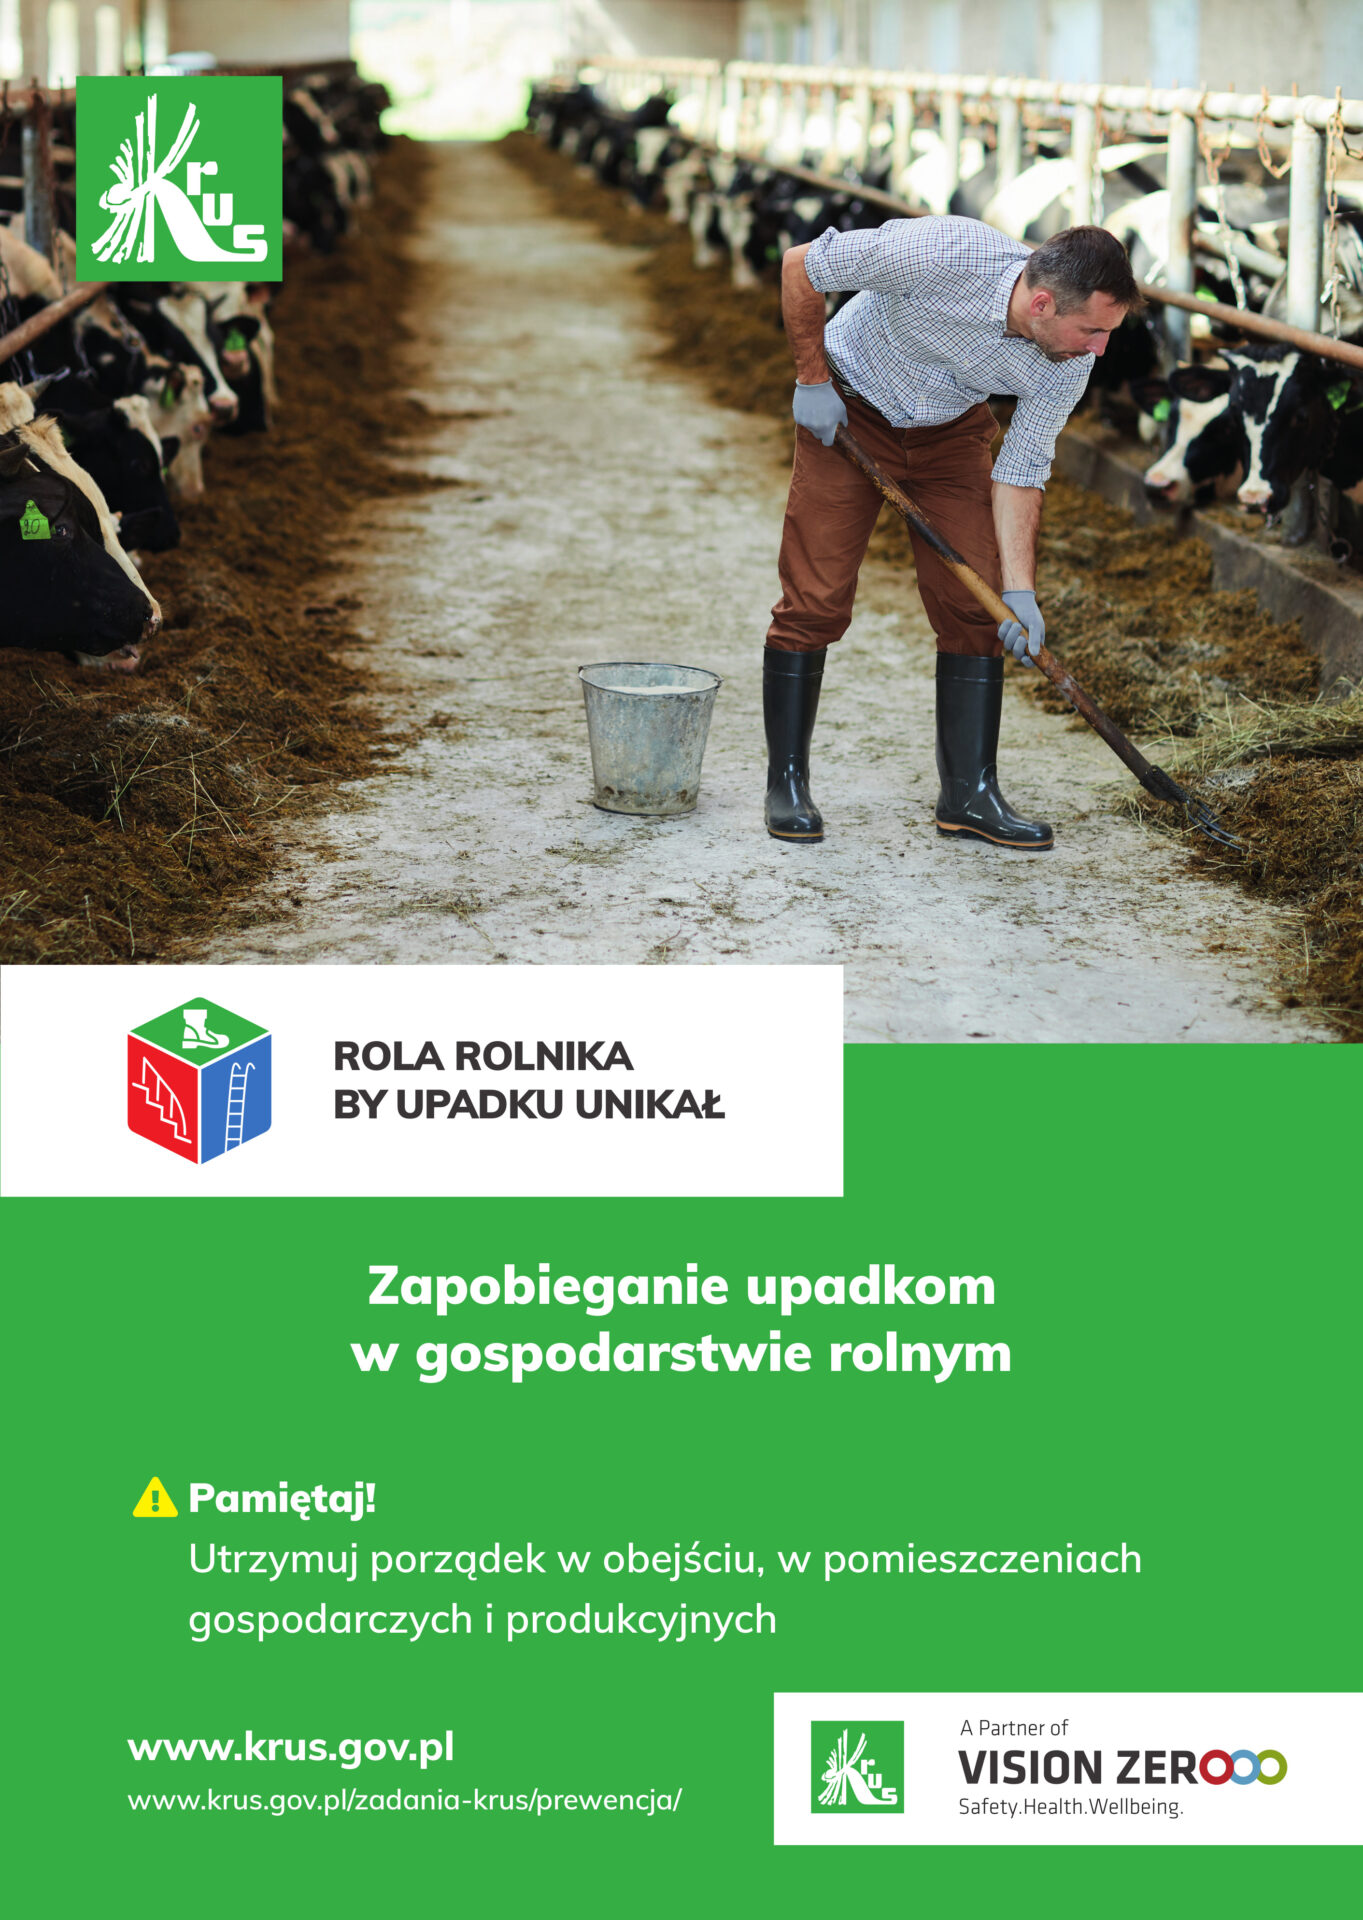 Akcja prewencyjna KRUS – „Rola rolnika by upadku unikał”